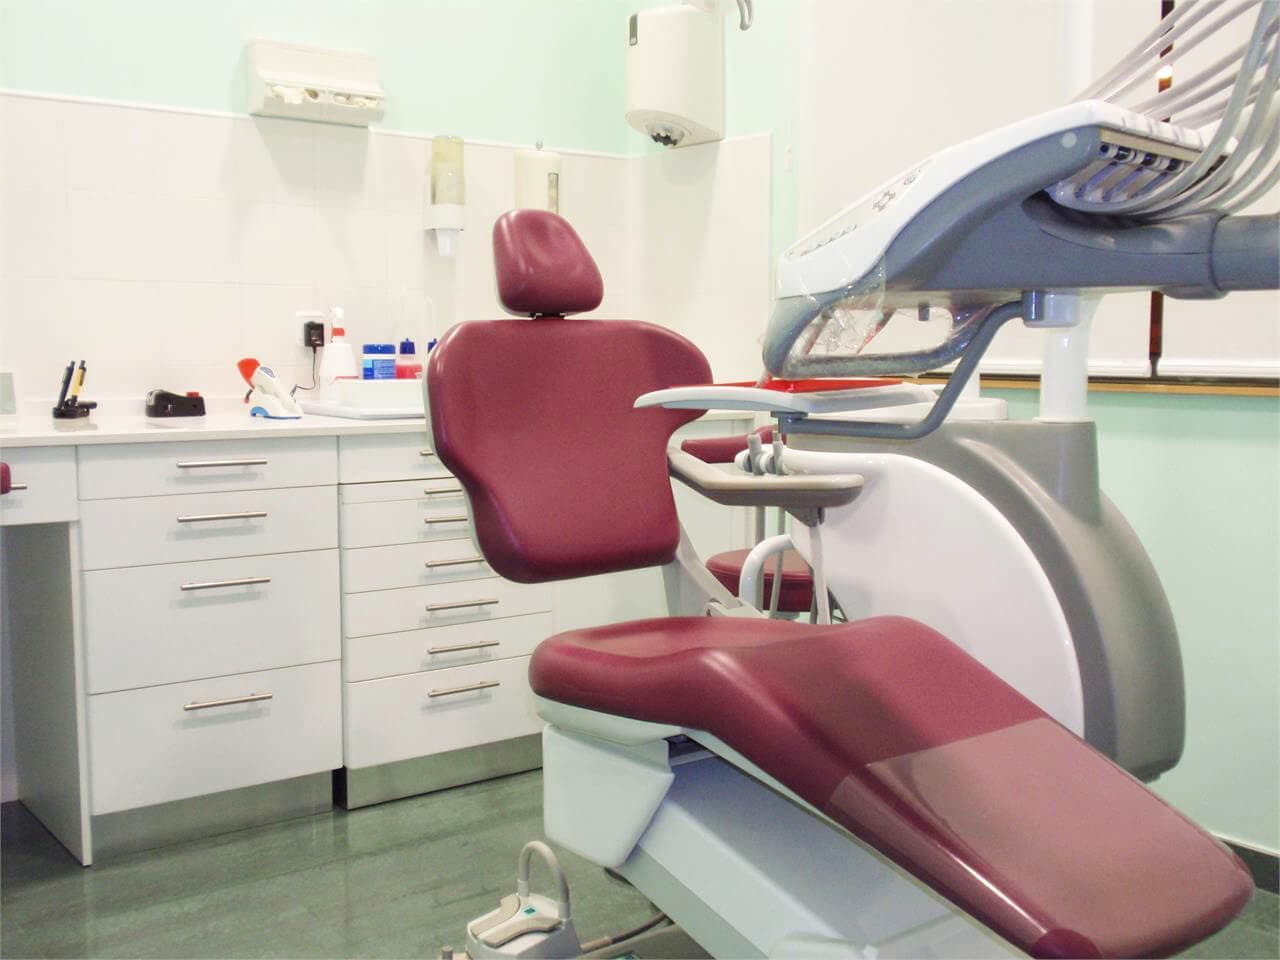 Clínica dental en Ferrol